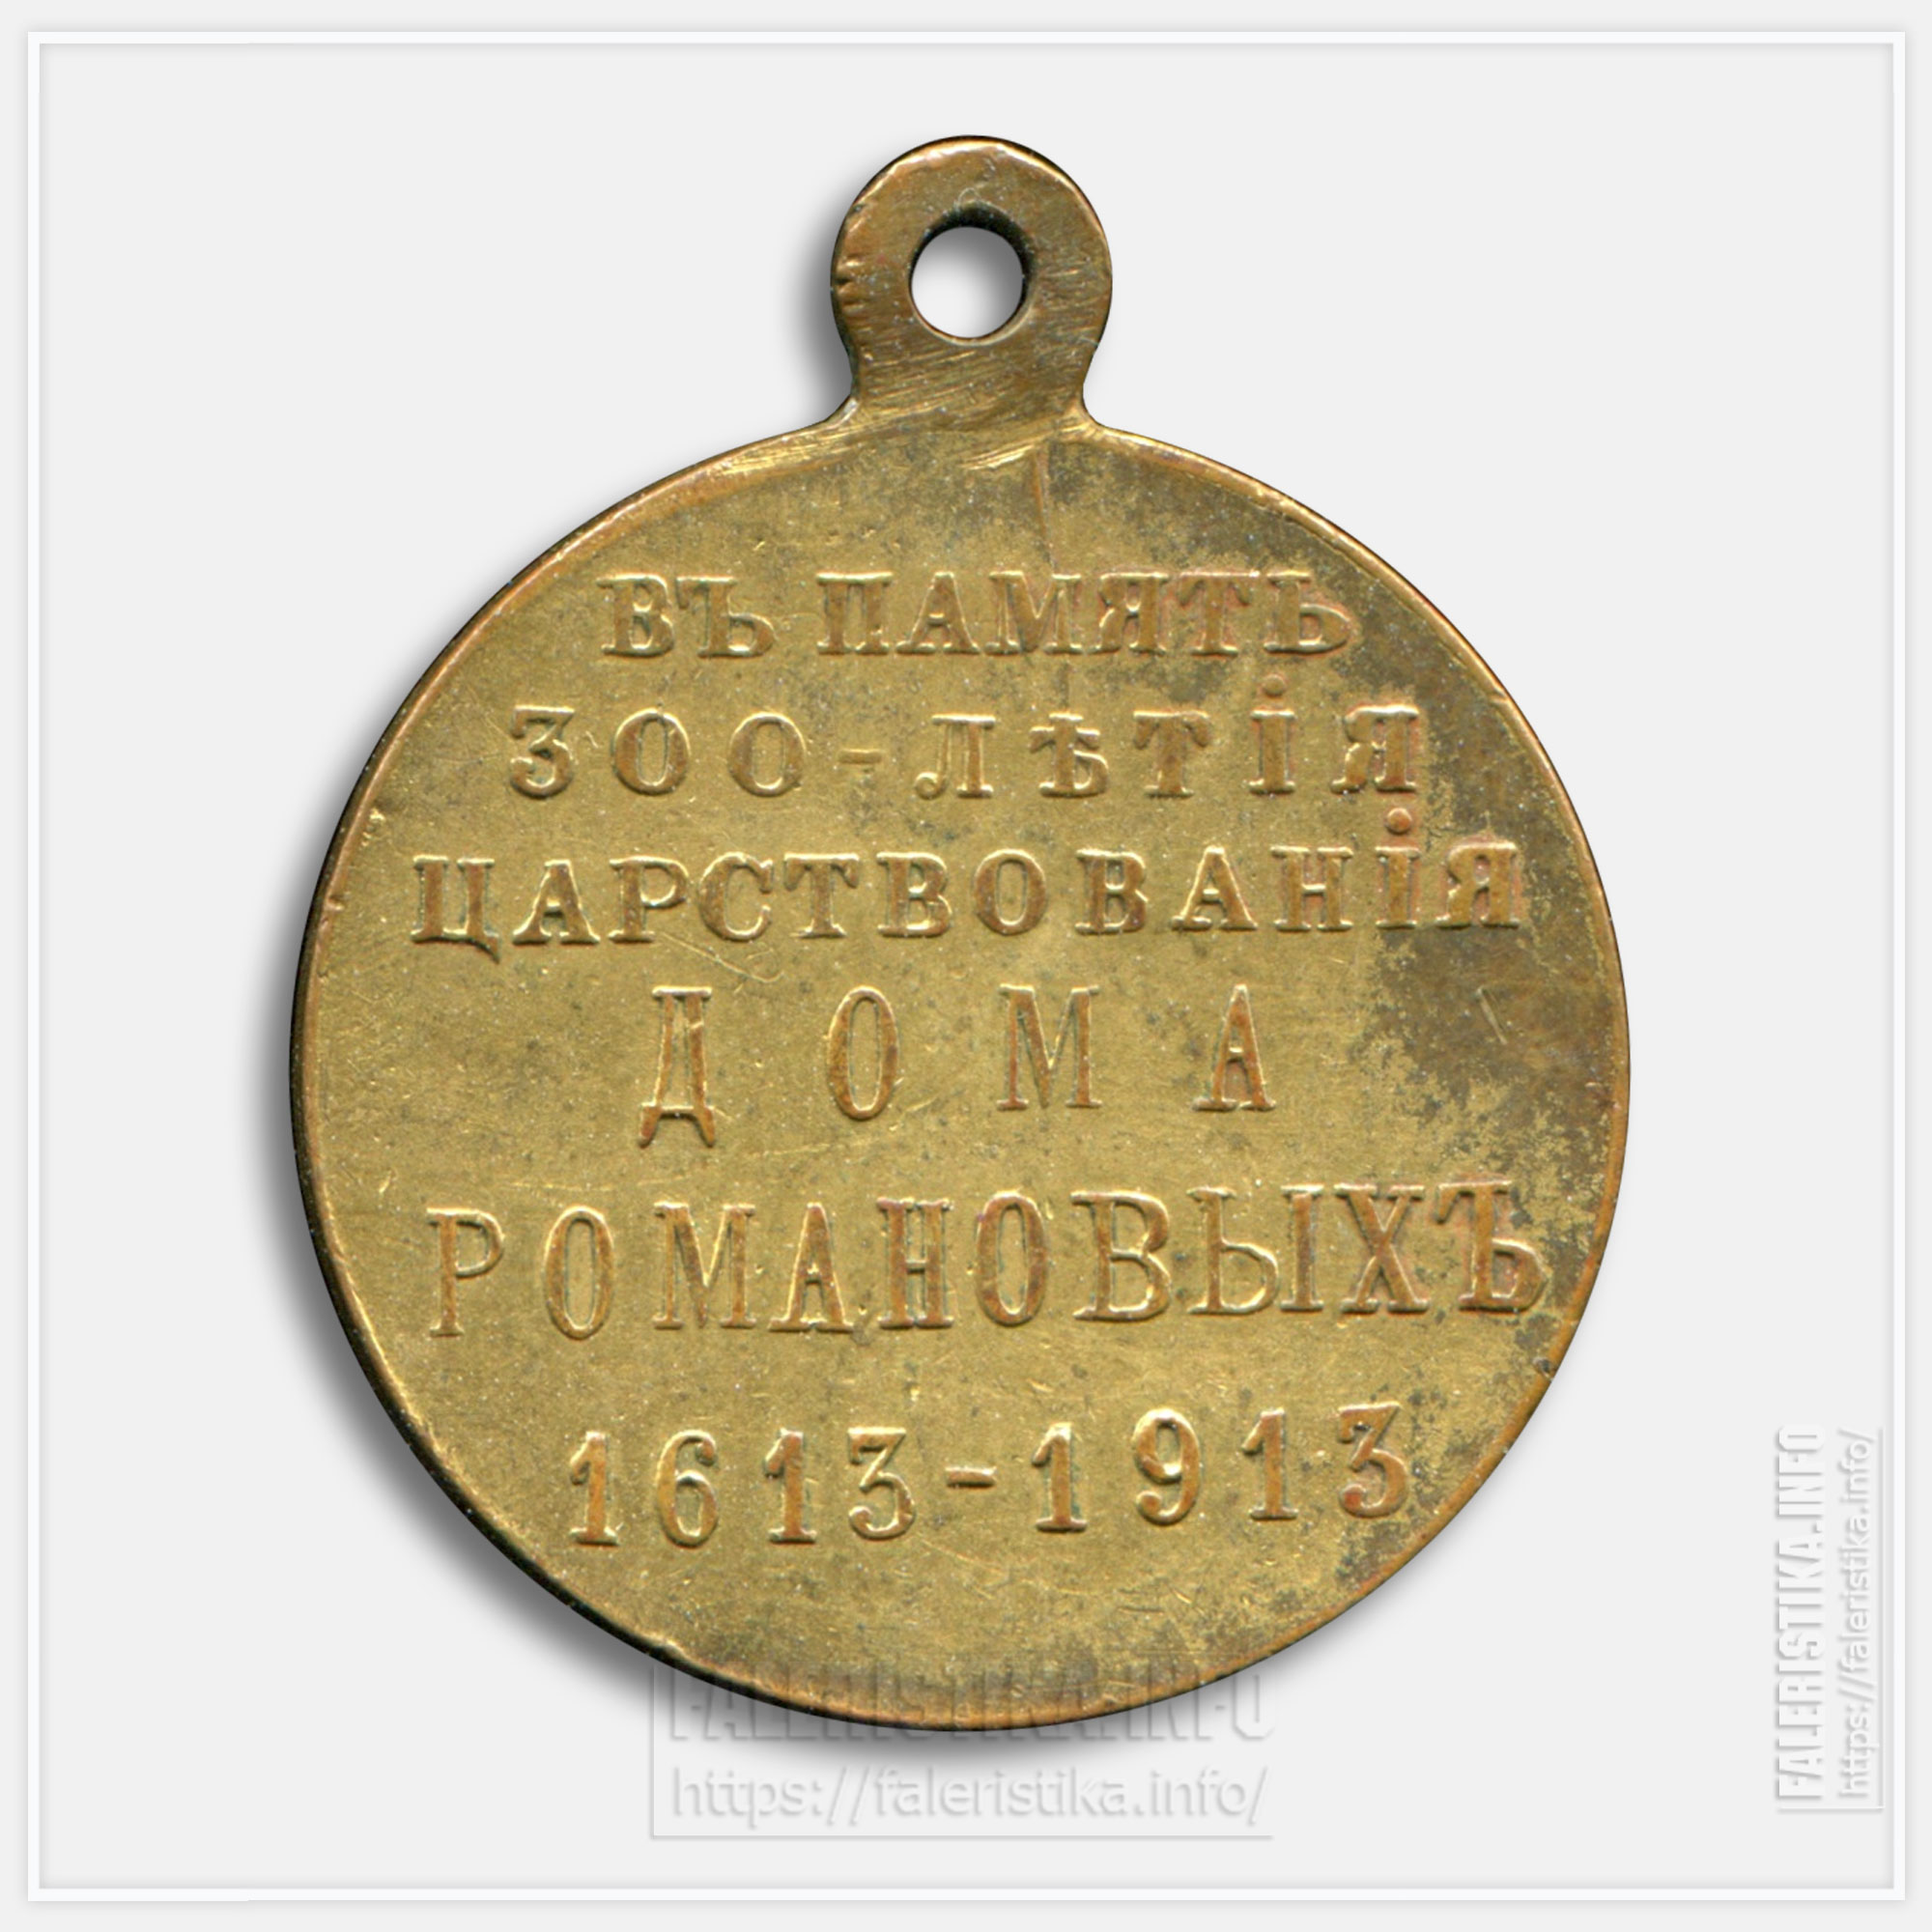 Медаль "В память 300-летия царствования дома Романовых 1613-1913" Частник